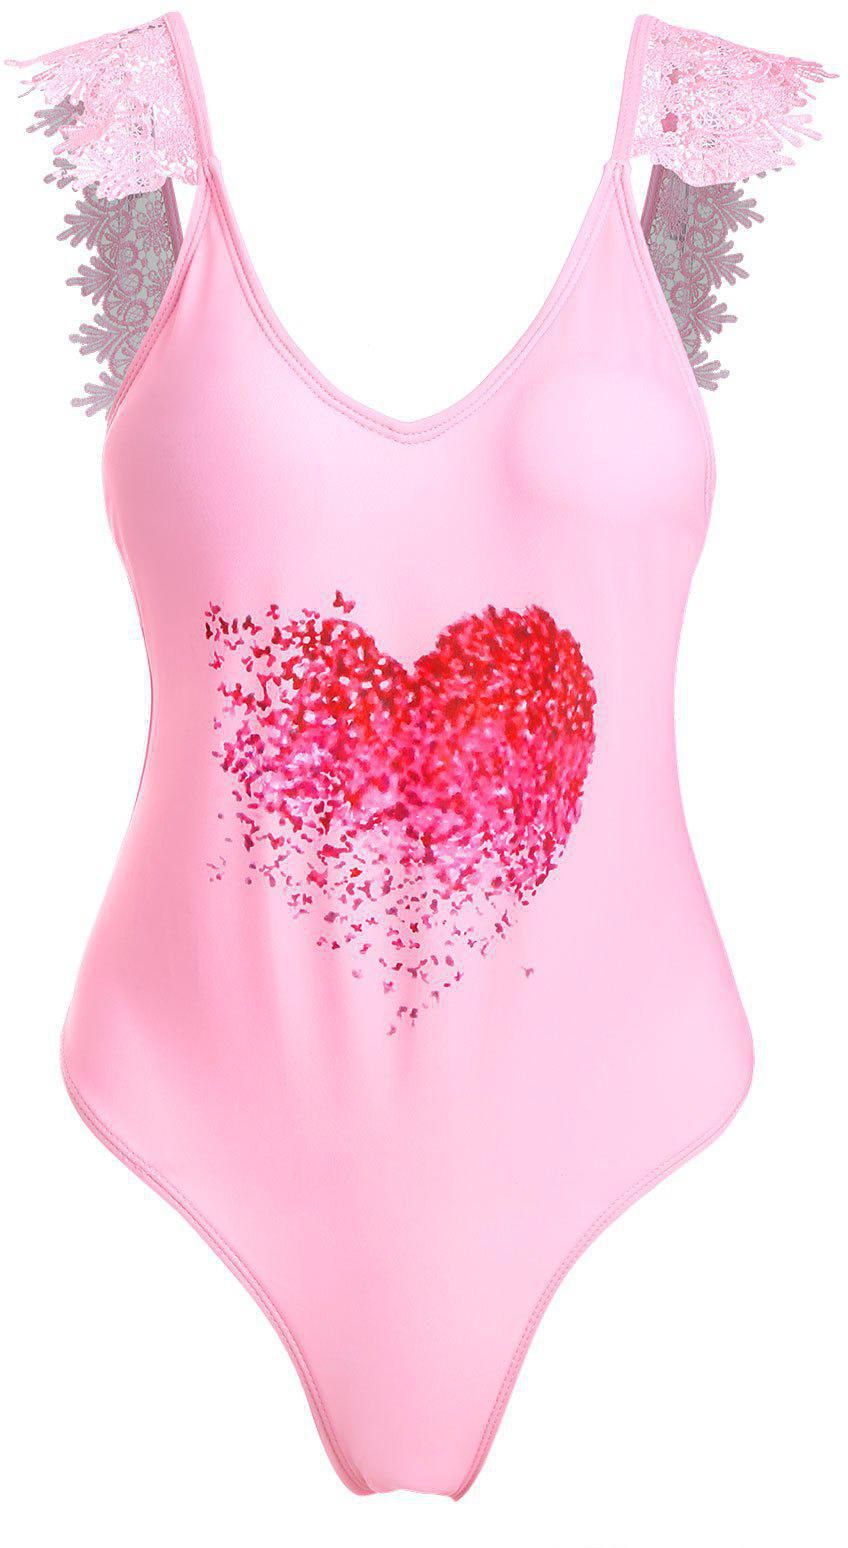 Lace Applique Plunge Heart Print Valentine Swimsuit - Xl